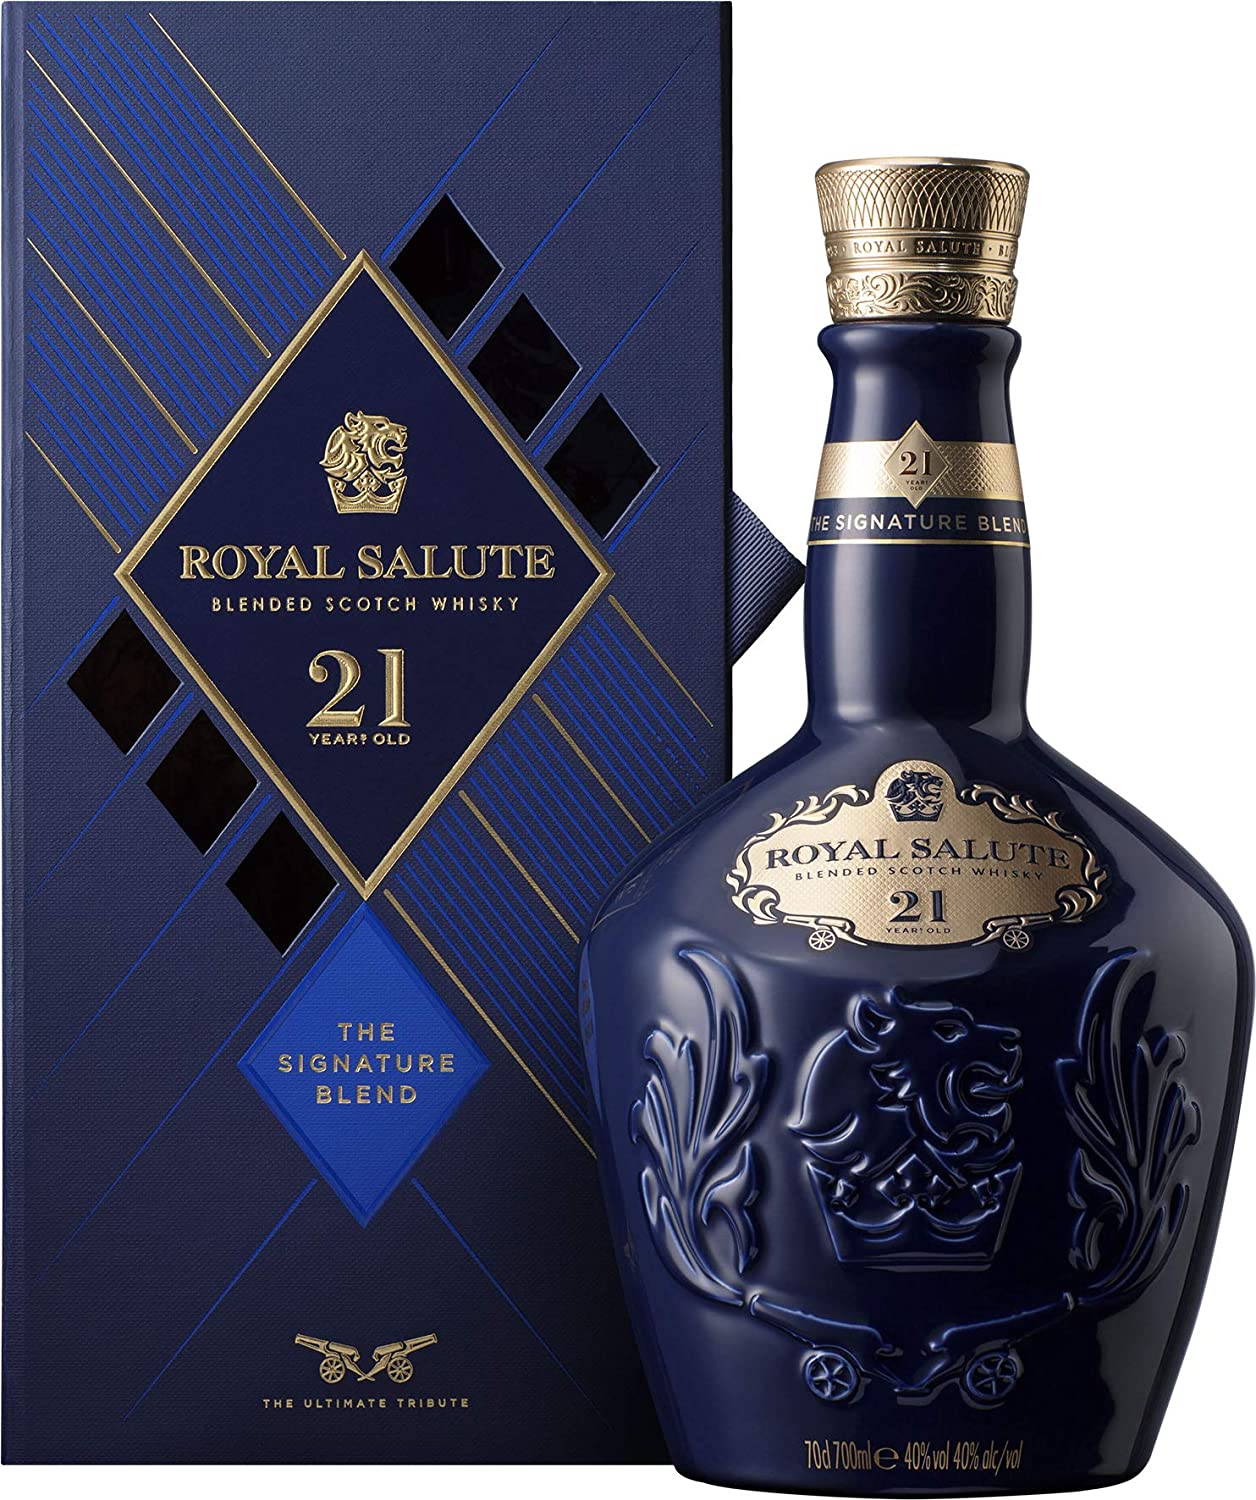 Comprar Whisky Chivas Royal Salute 21 Años 】 barato online🍷